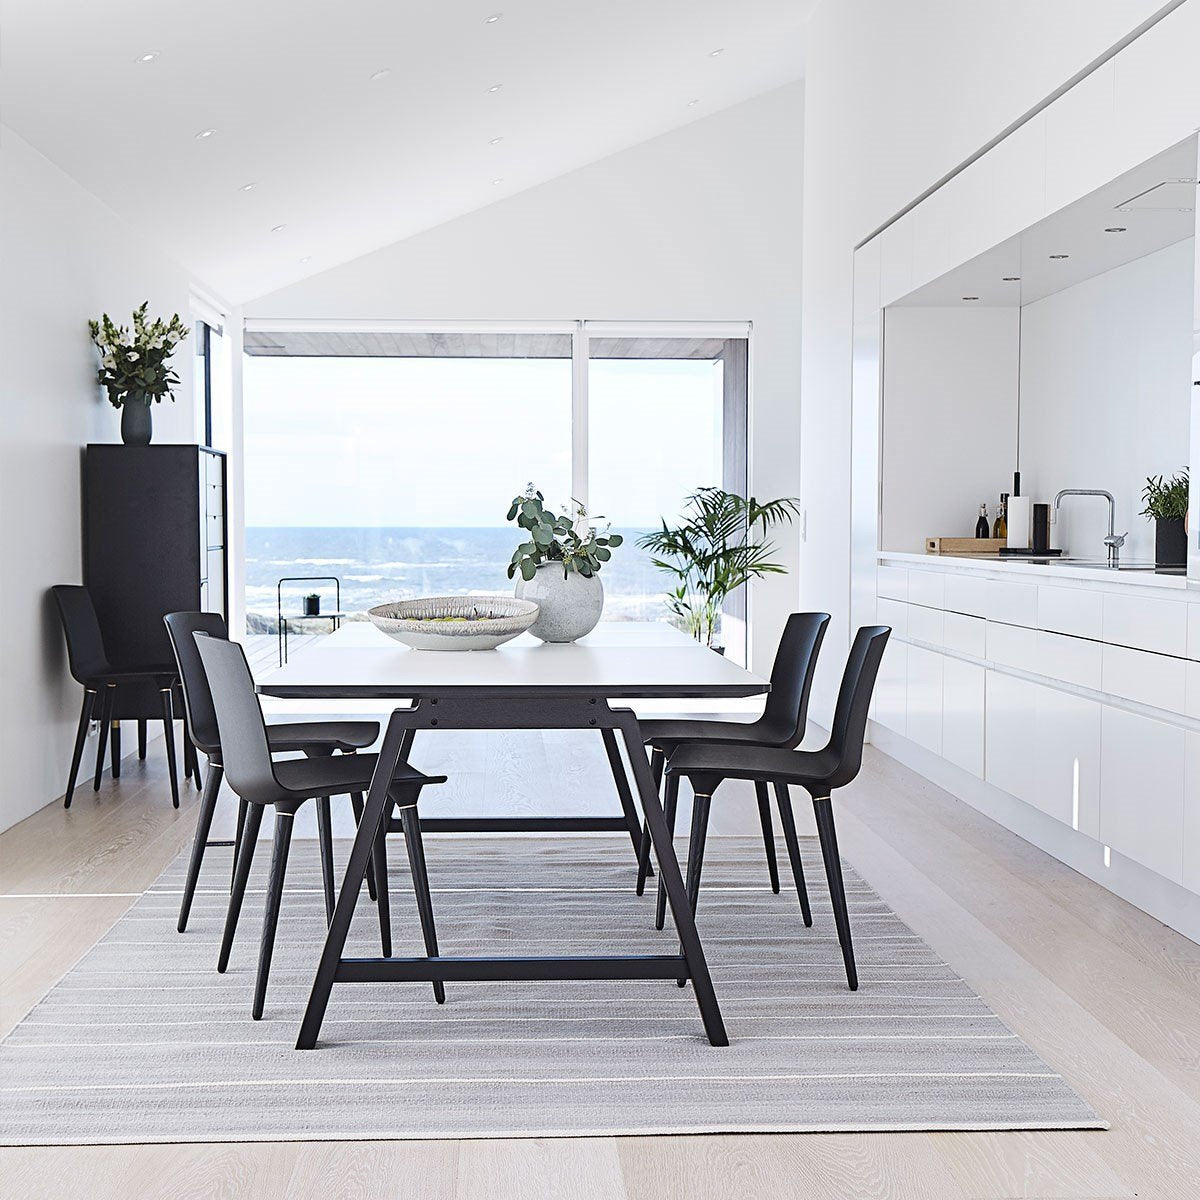 Andersen Furniture T1 udtræksbord, hvid laminat, sort stel, 160 cm